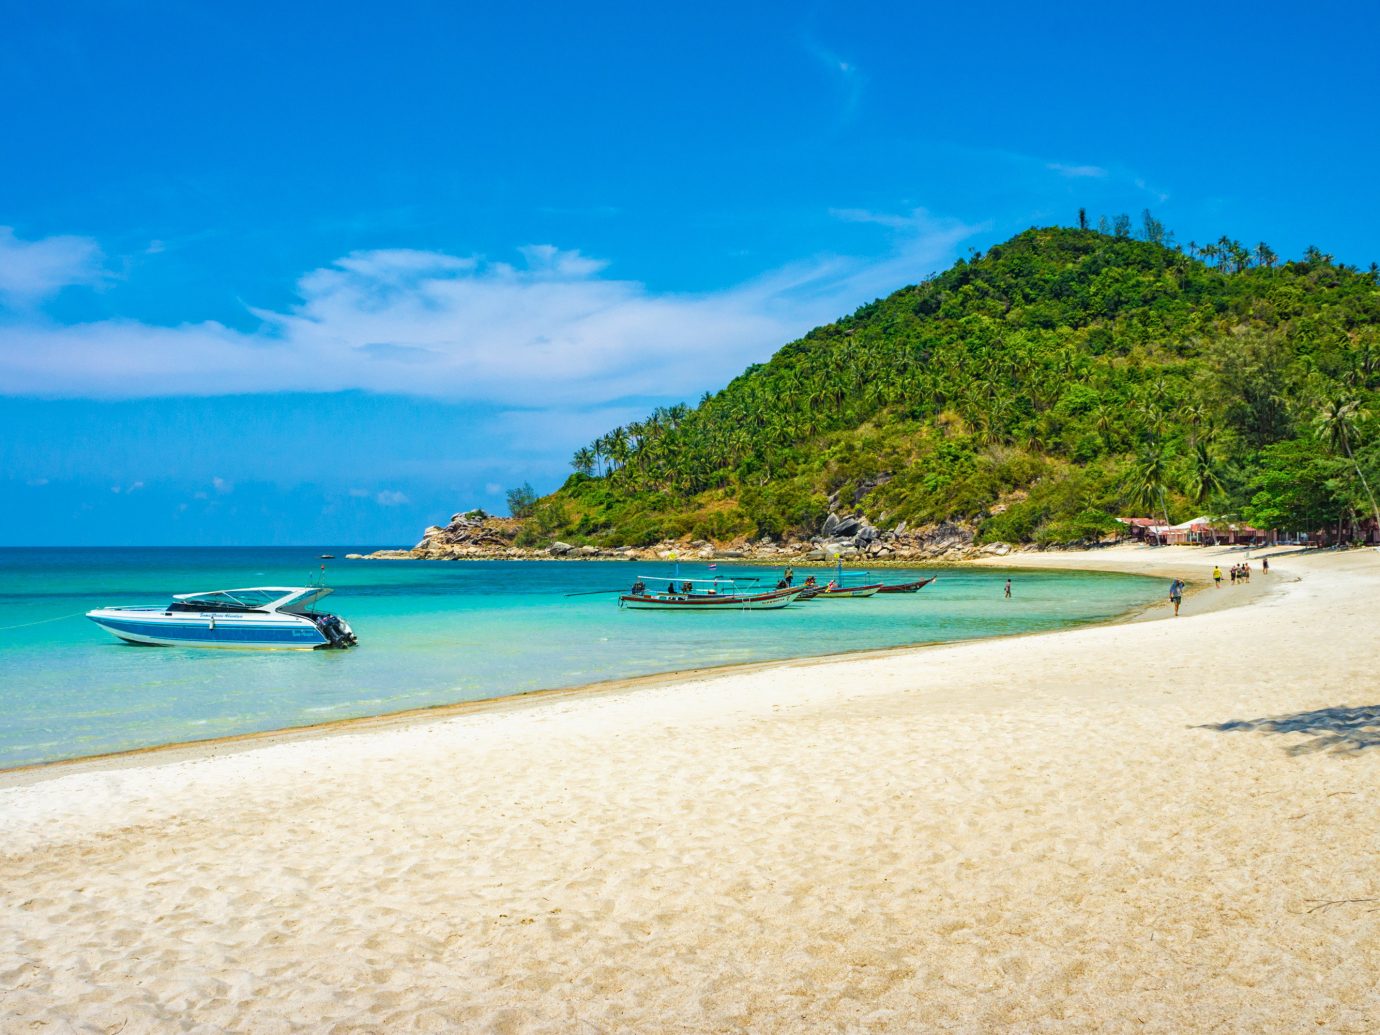 شواطئ تايلاند : افضل 10 شواطئ في تايلند